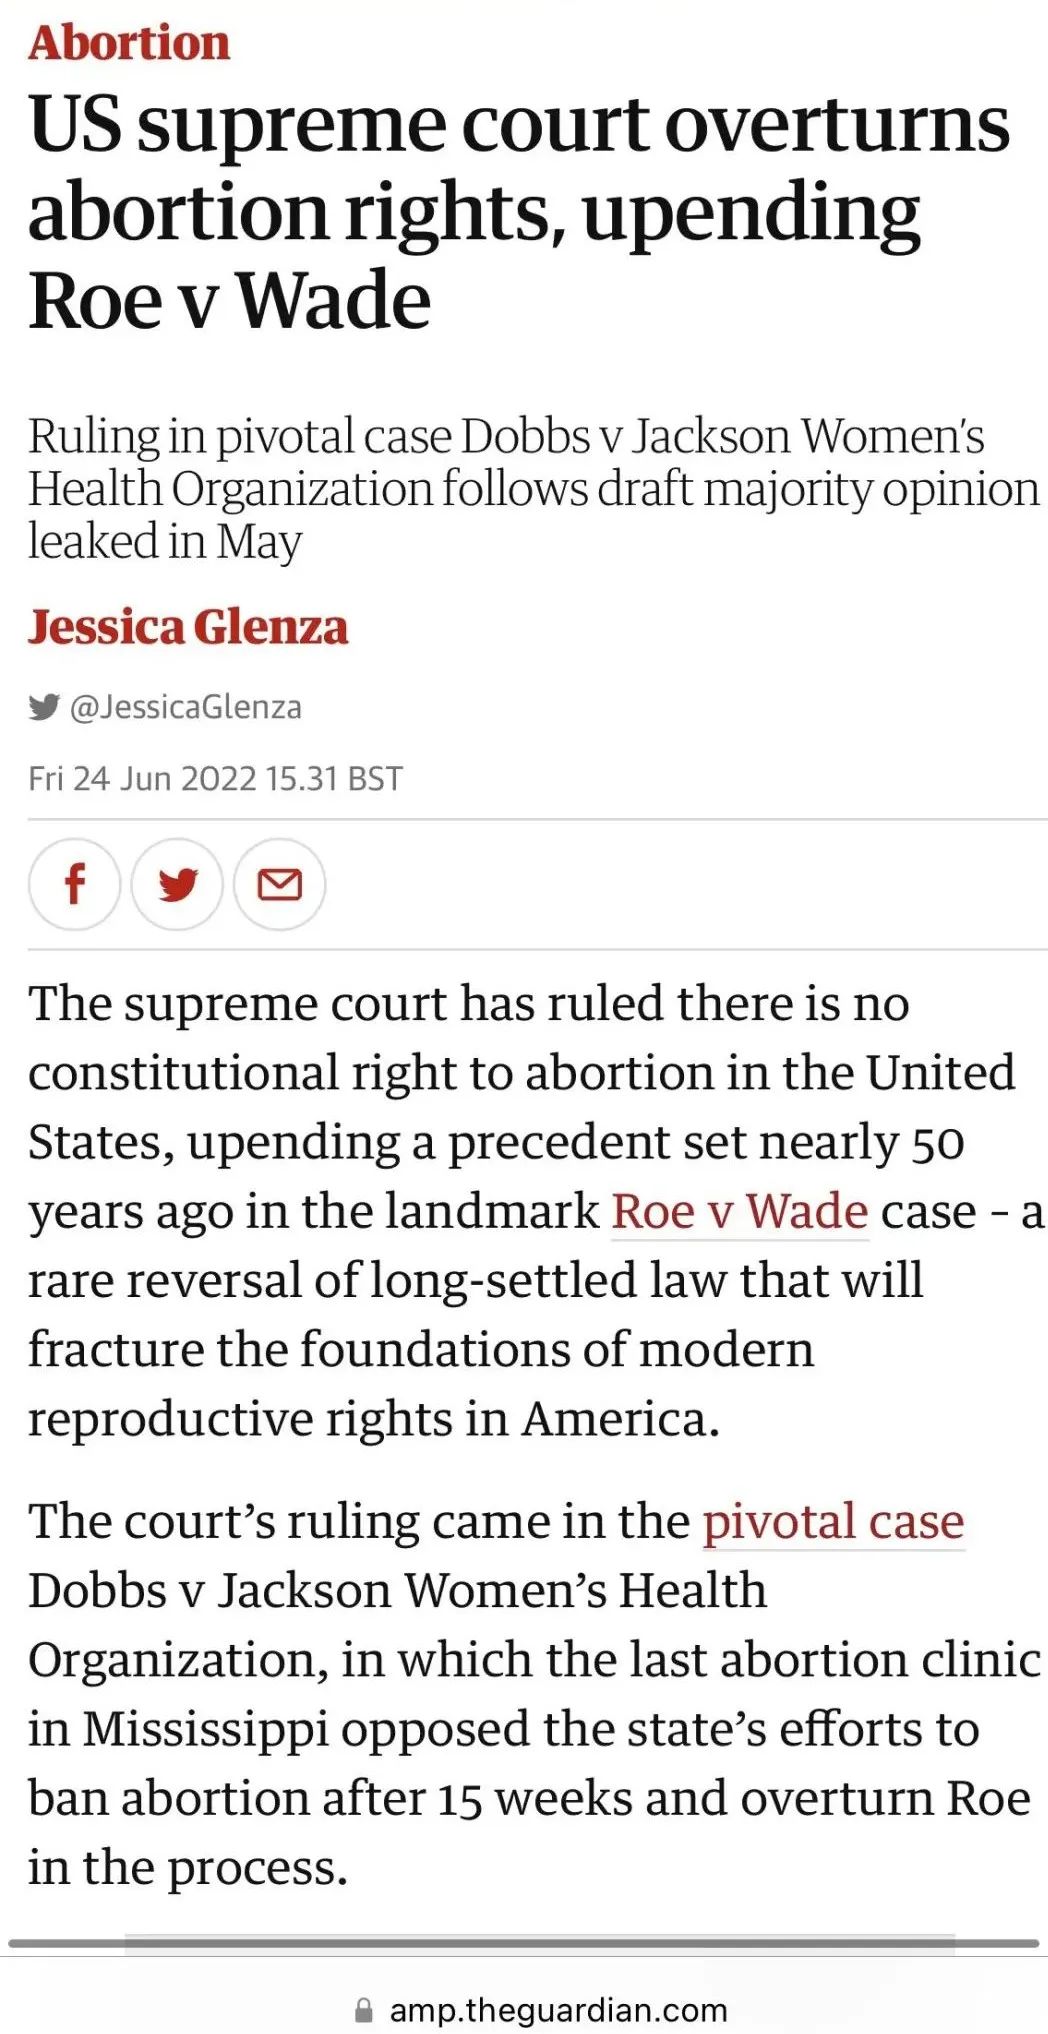 美国历史罕见的逆转时刻: 一个取消堕胎权判决为何惊动全美?